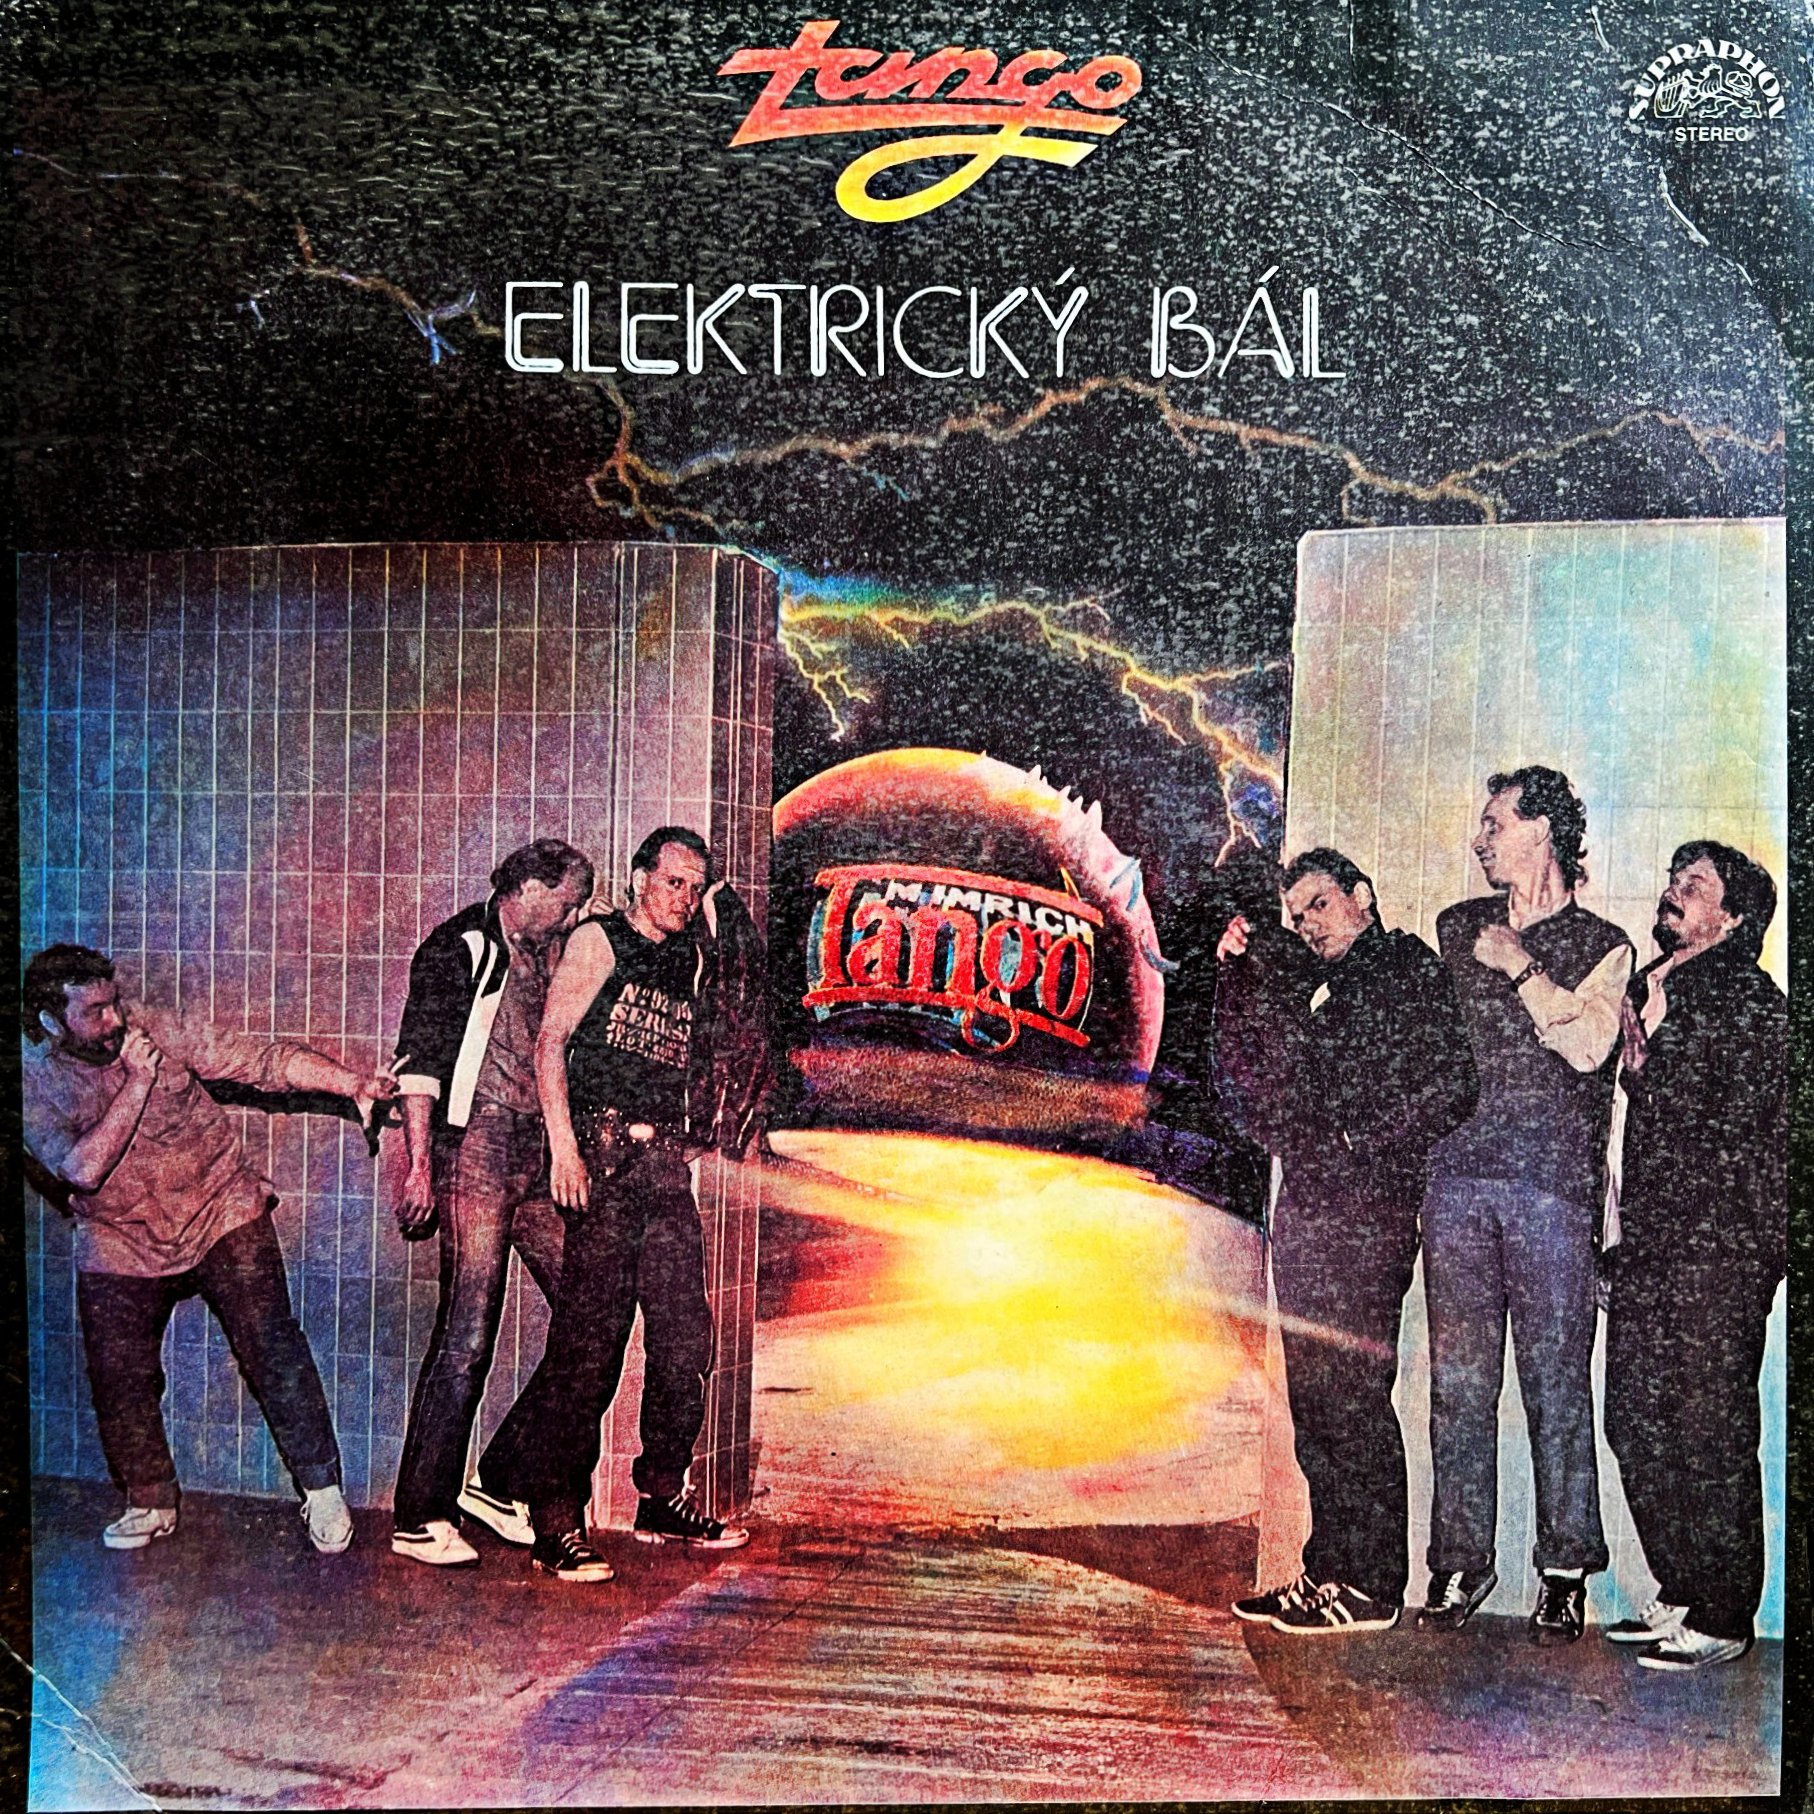 LP Tango ‎– Elektrický Bál